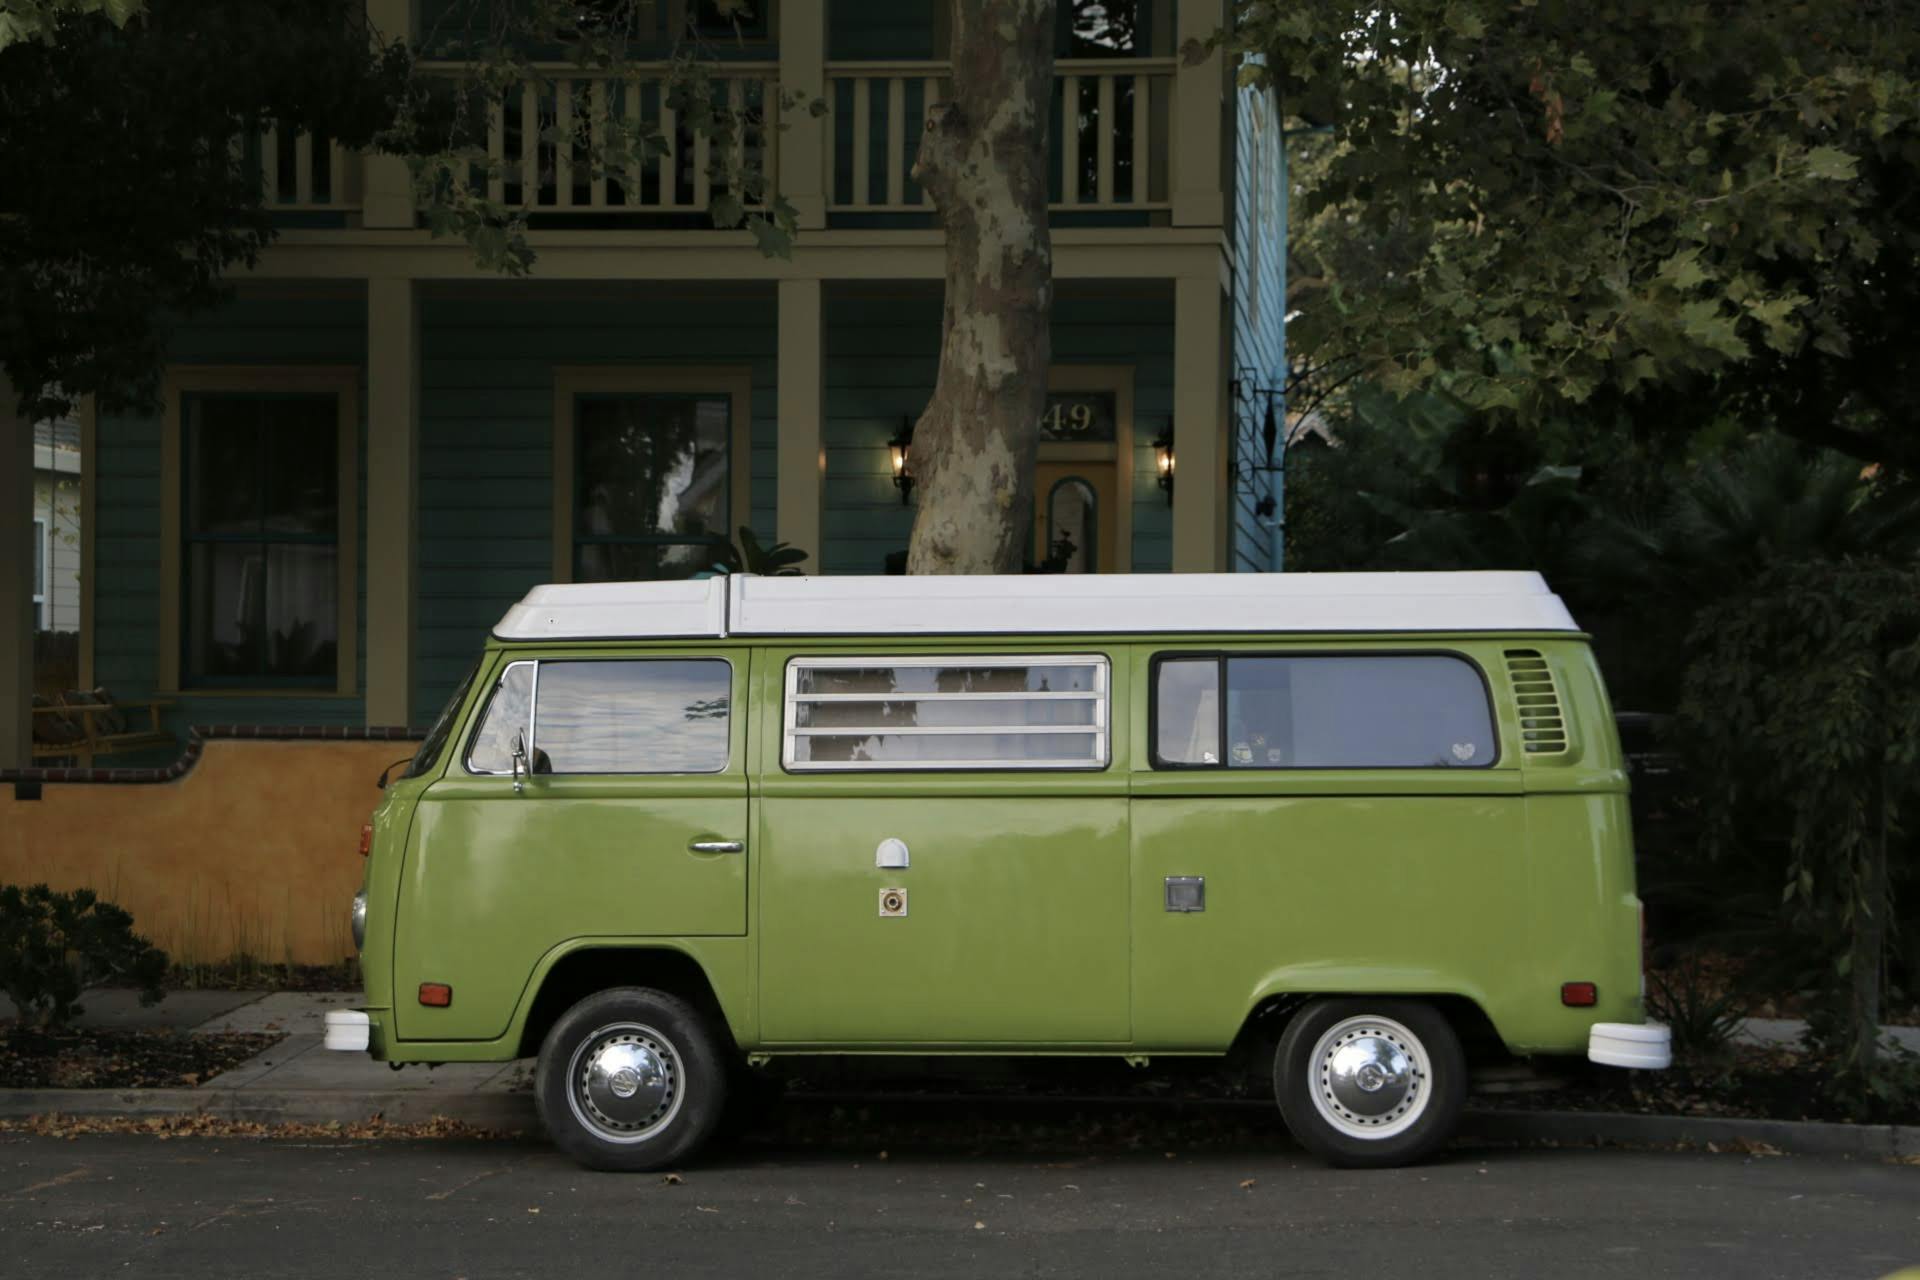 A Green Van